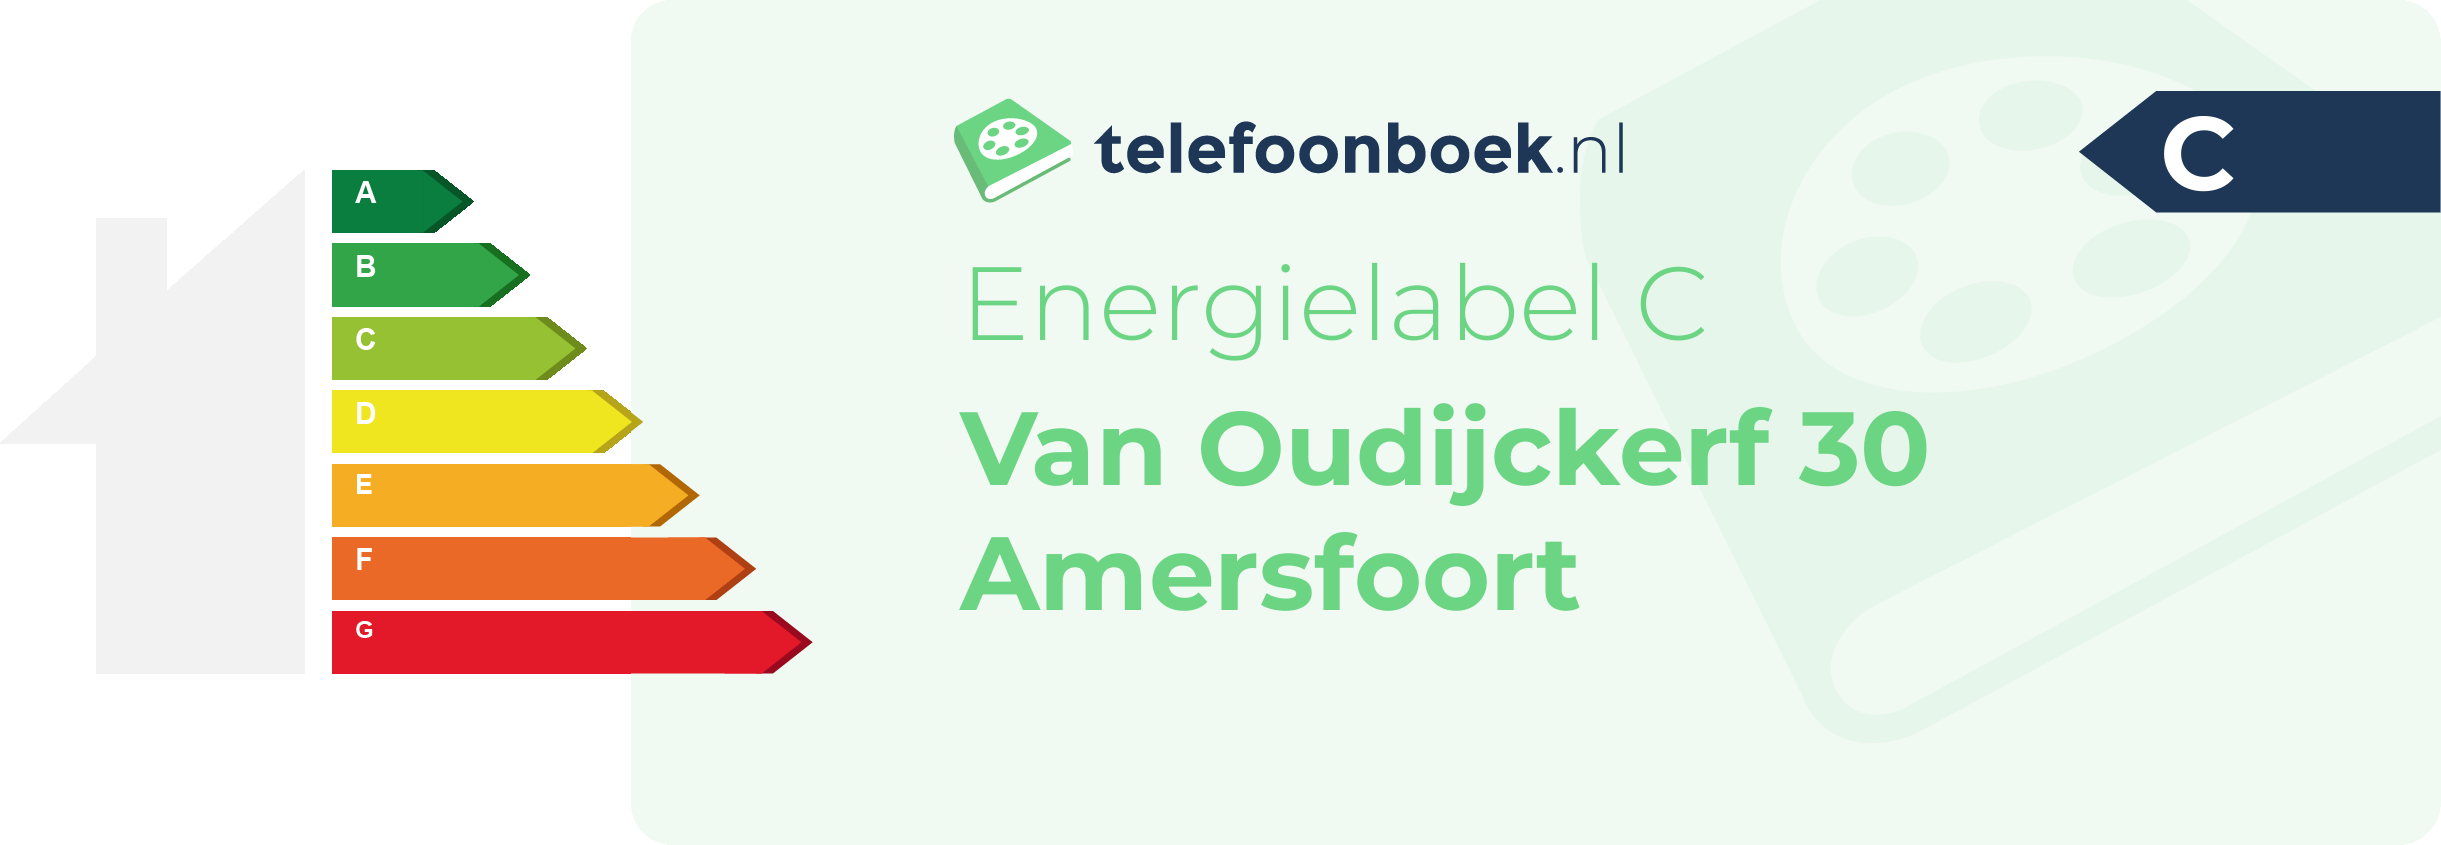 Energielabel Van Oudijckerf 30 Amersfoort